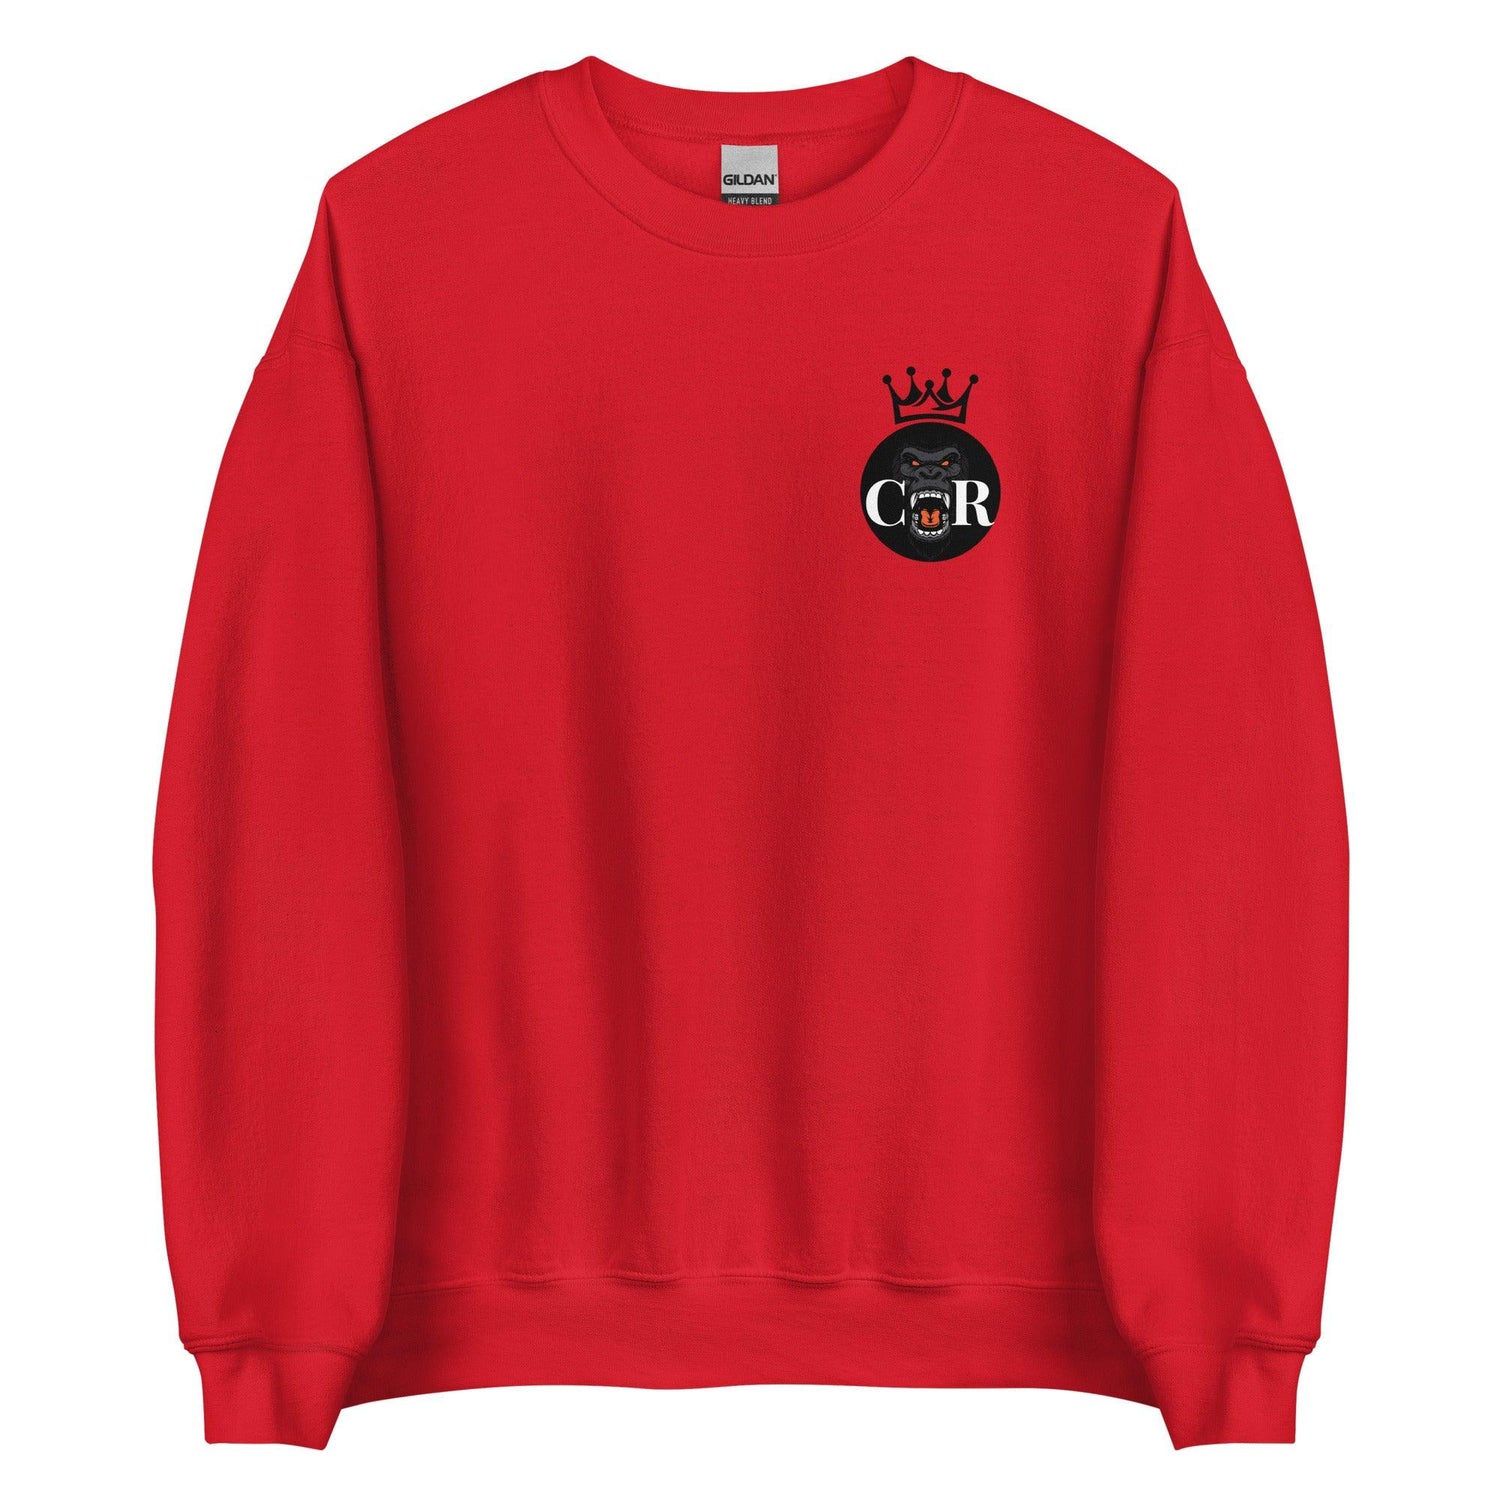 Chris Royster "Crowned" Sweatshirt - Fan Arch